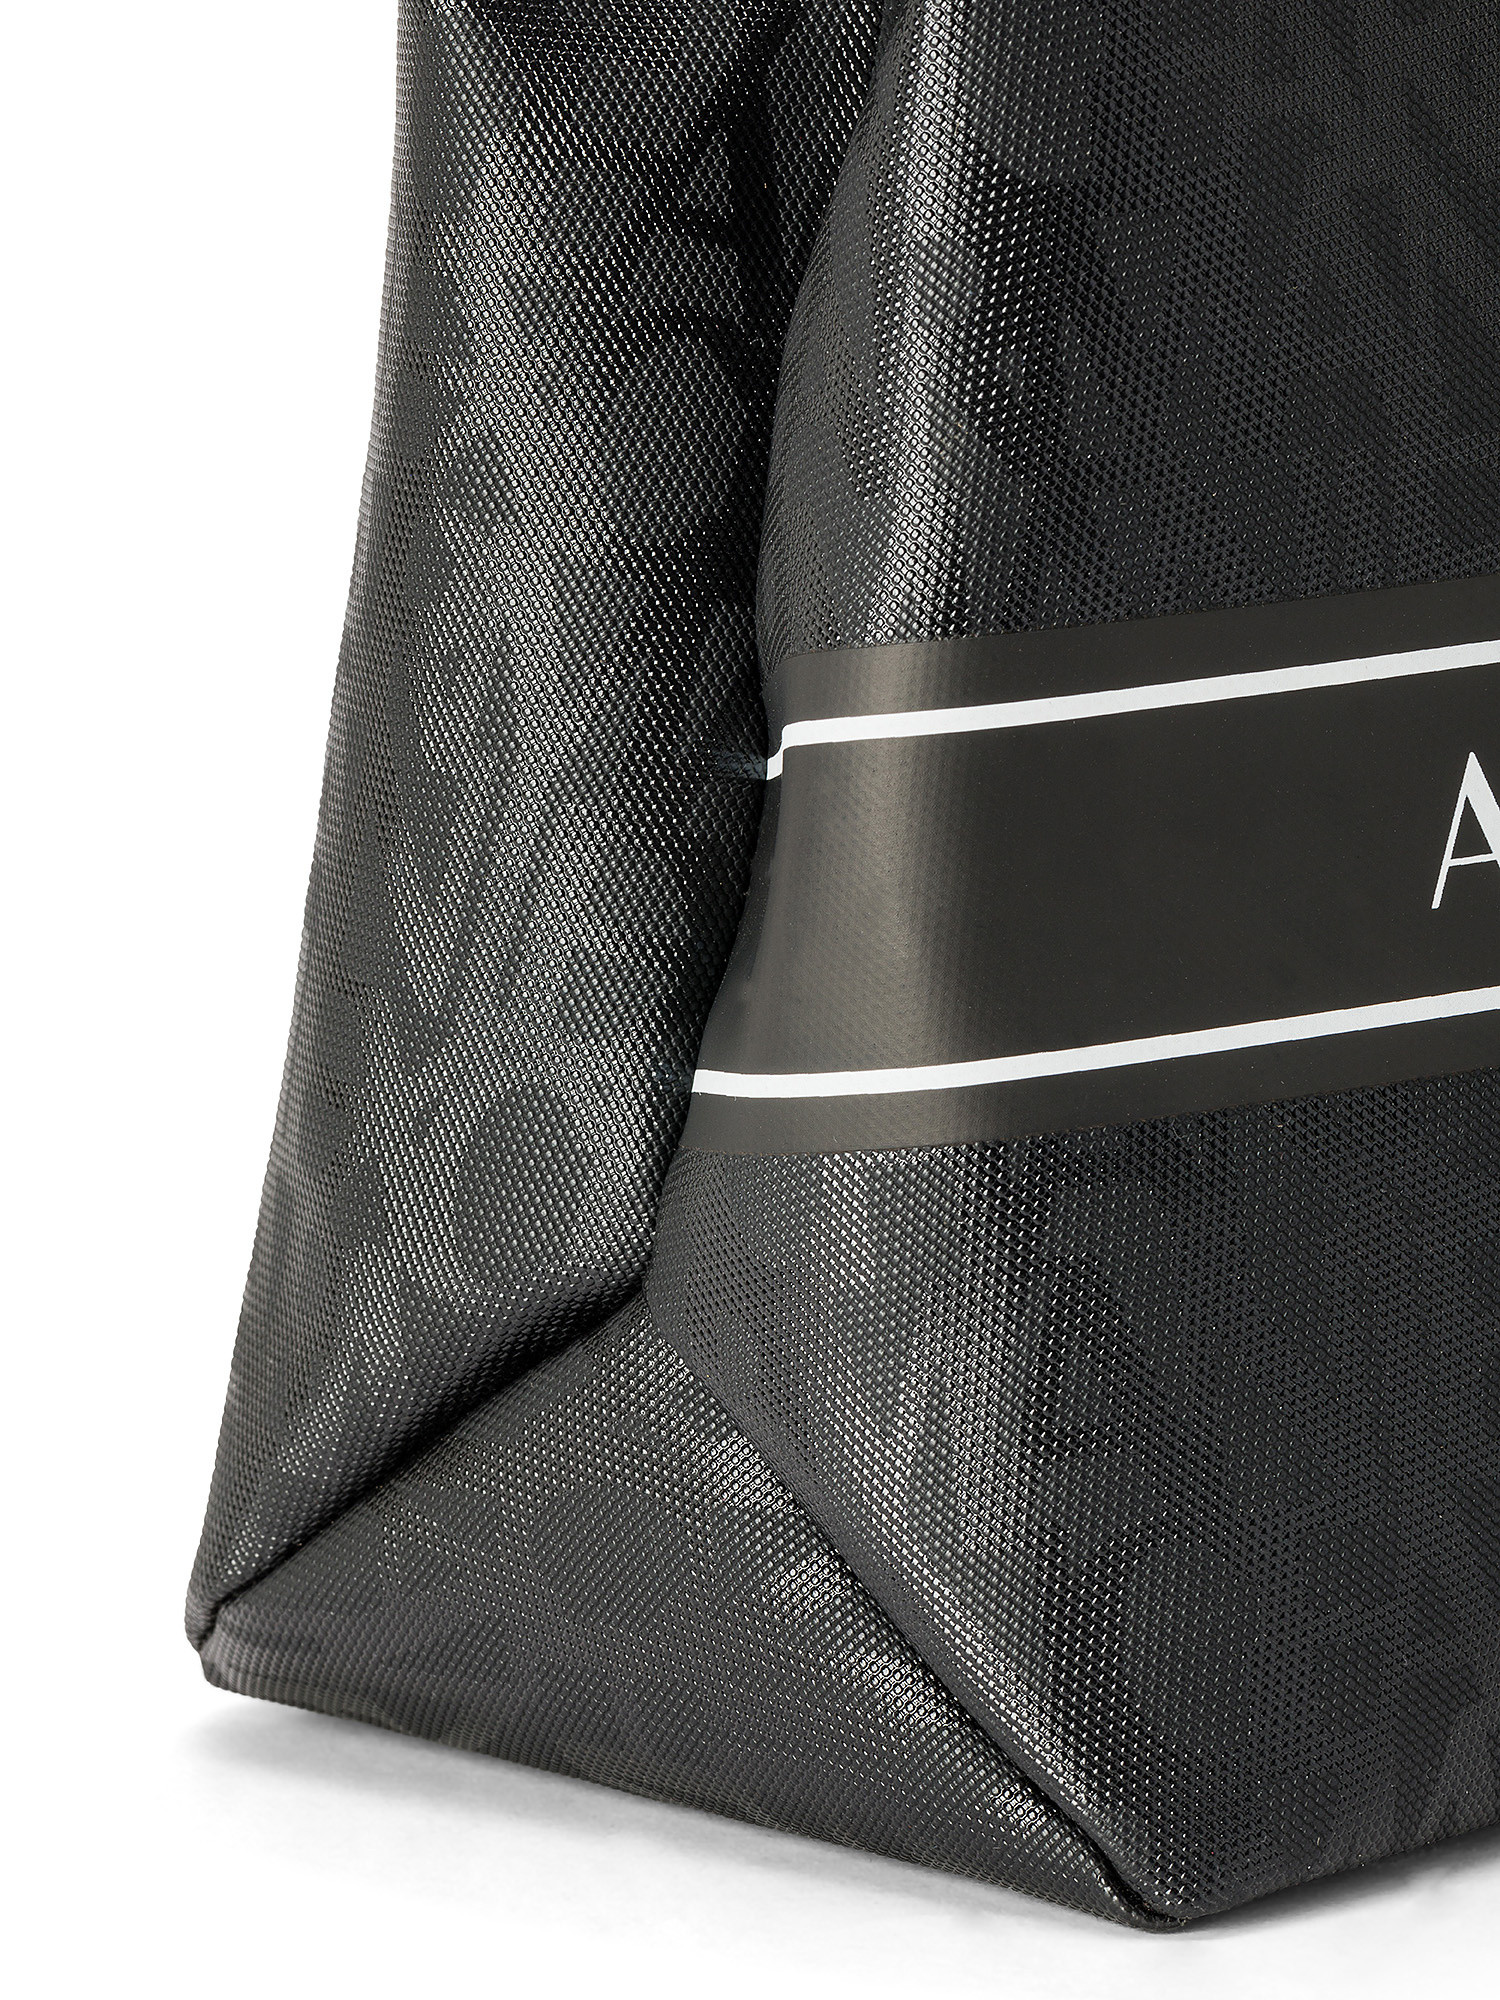 Armani Exchange - Shopper bag with all-over logo, Black, large image number 2